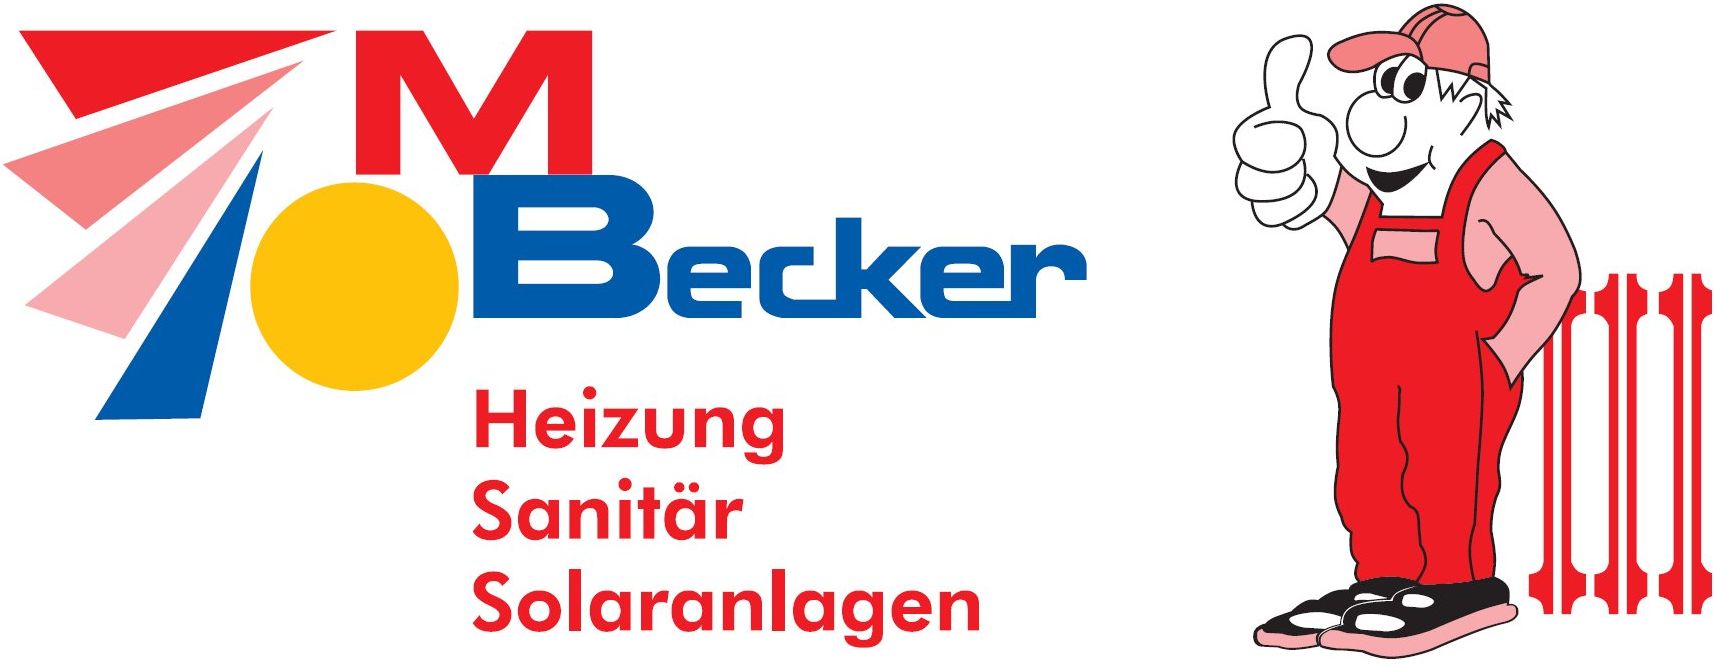 M. Becker Heizung.jpg